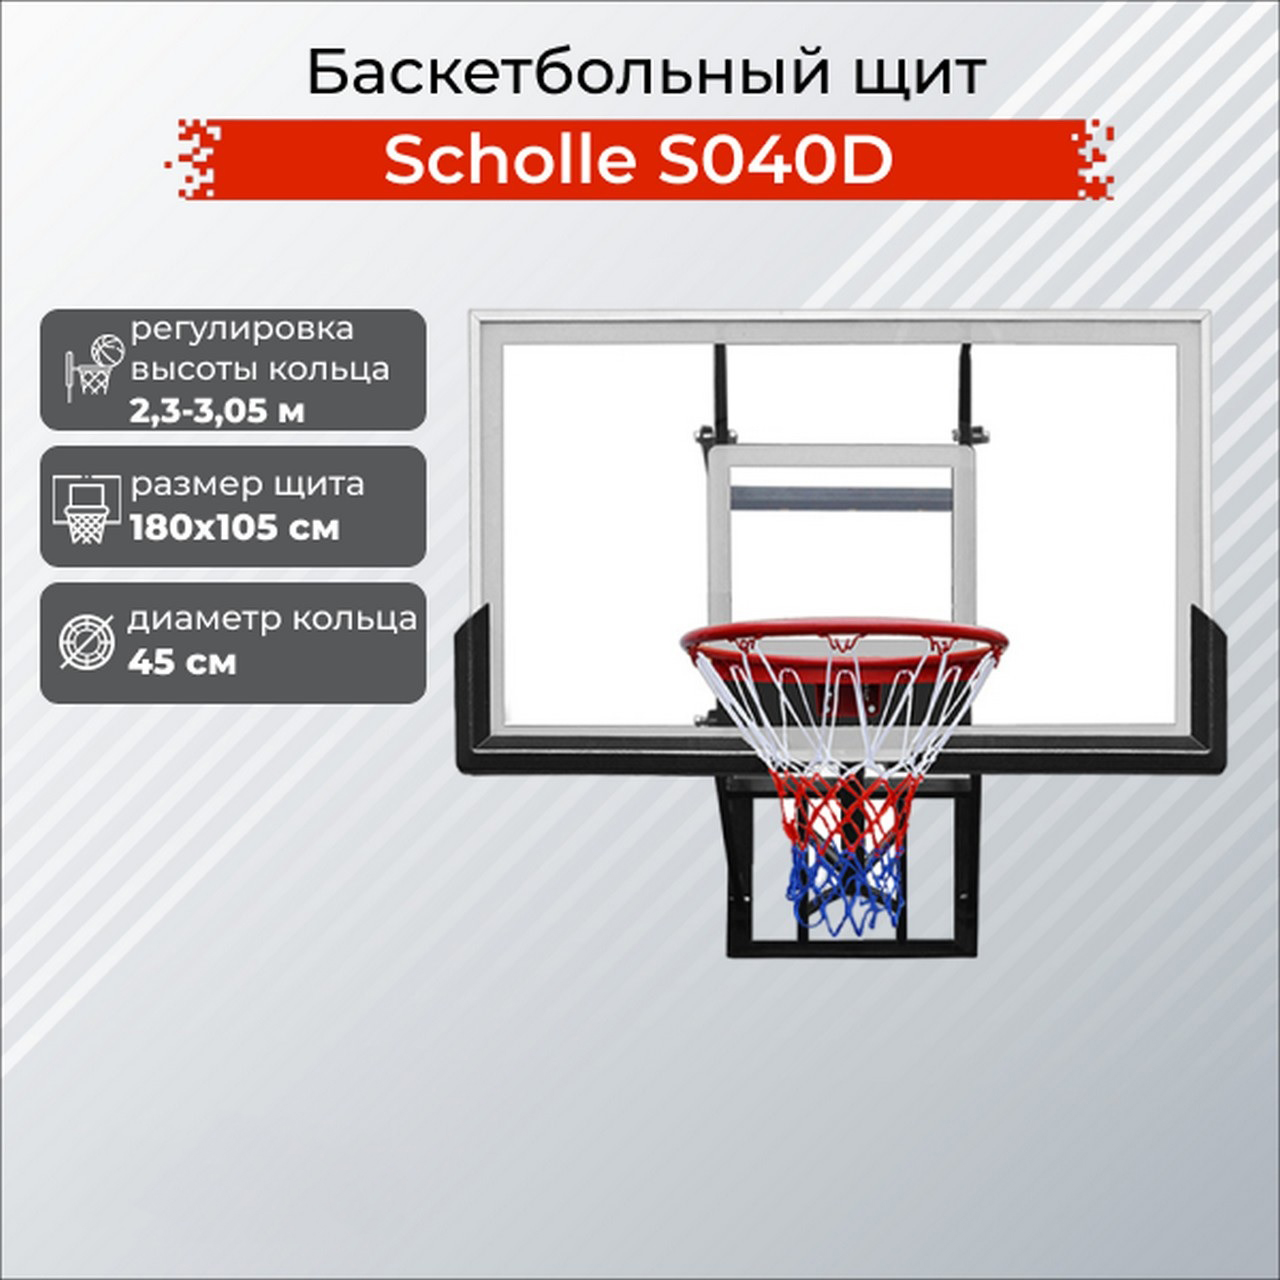 Баскетбольный щит Scholle S040D 1280_1280